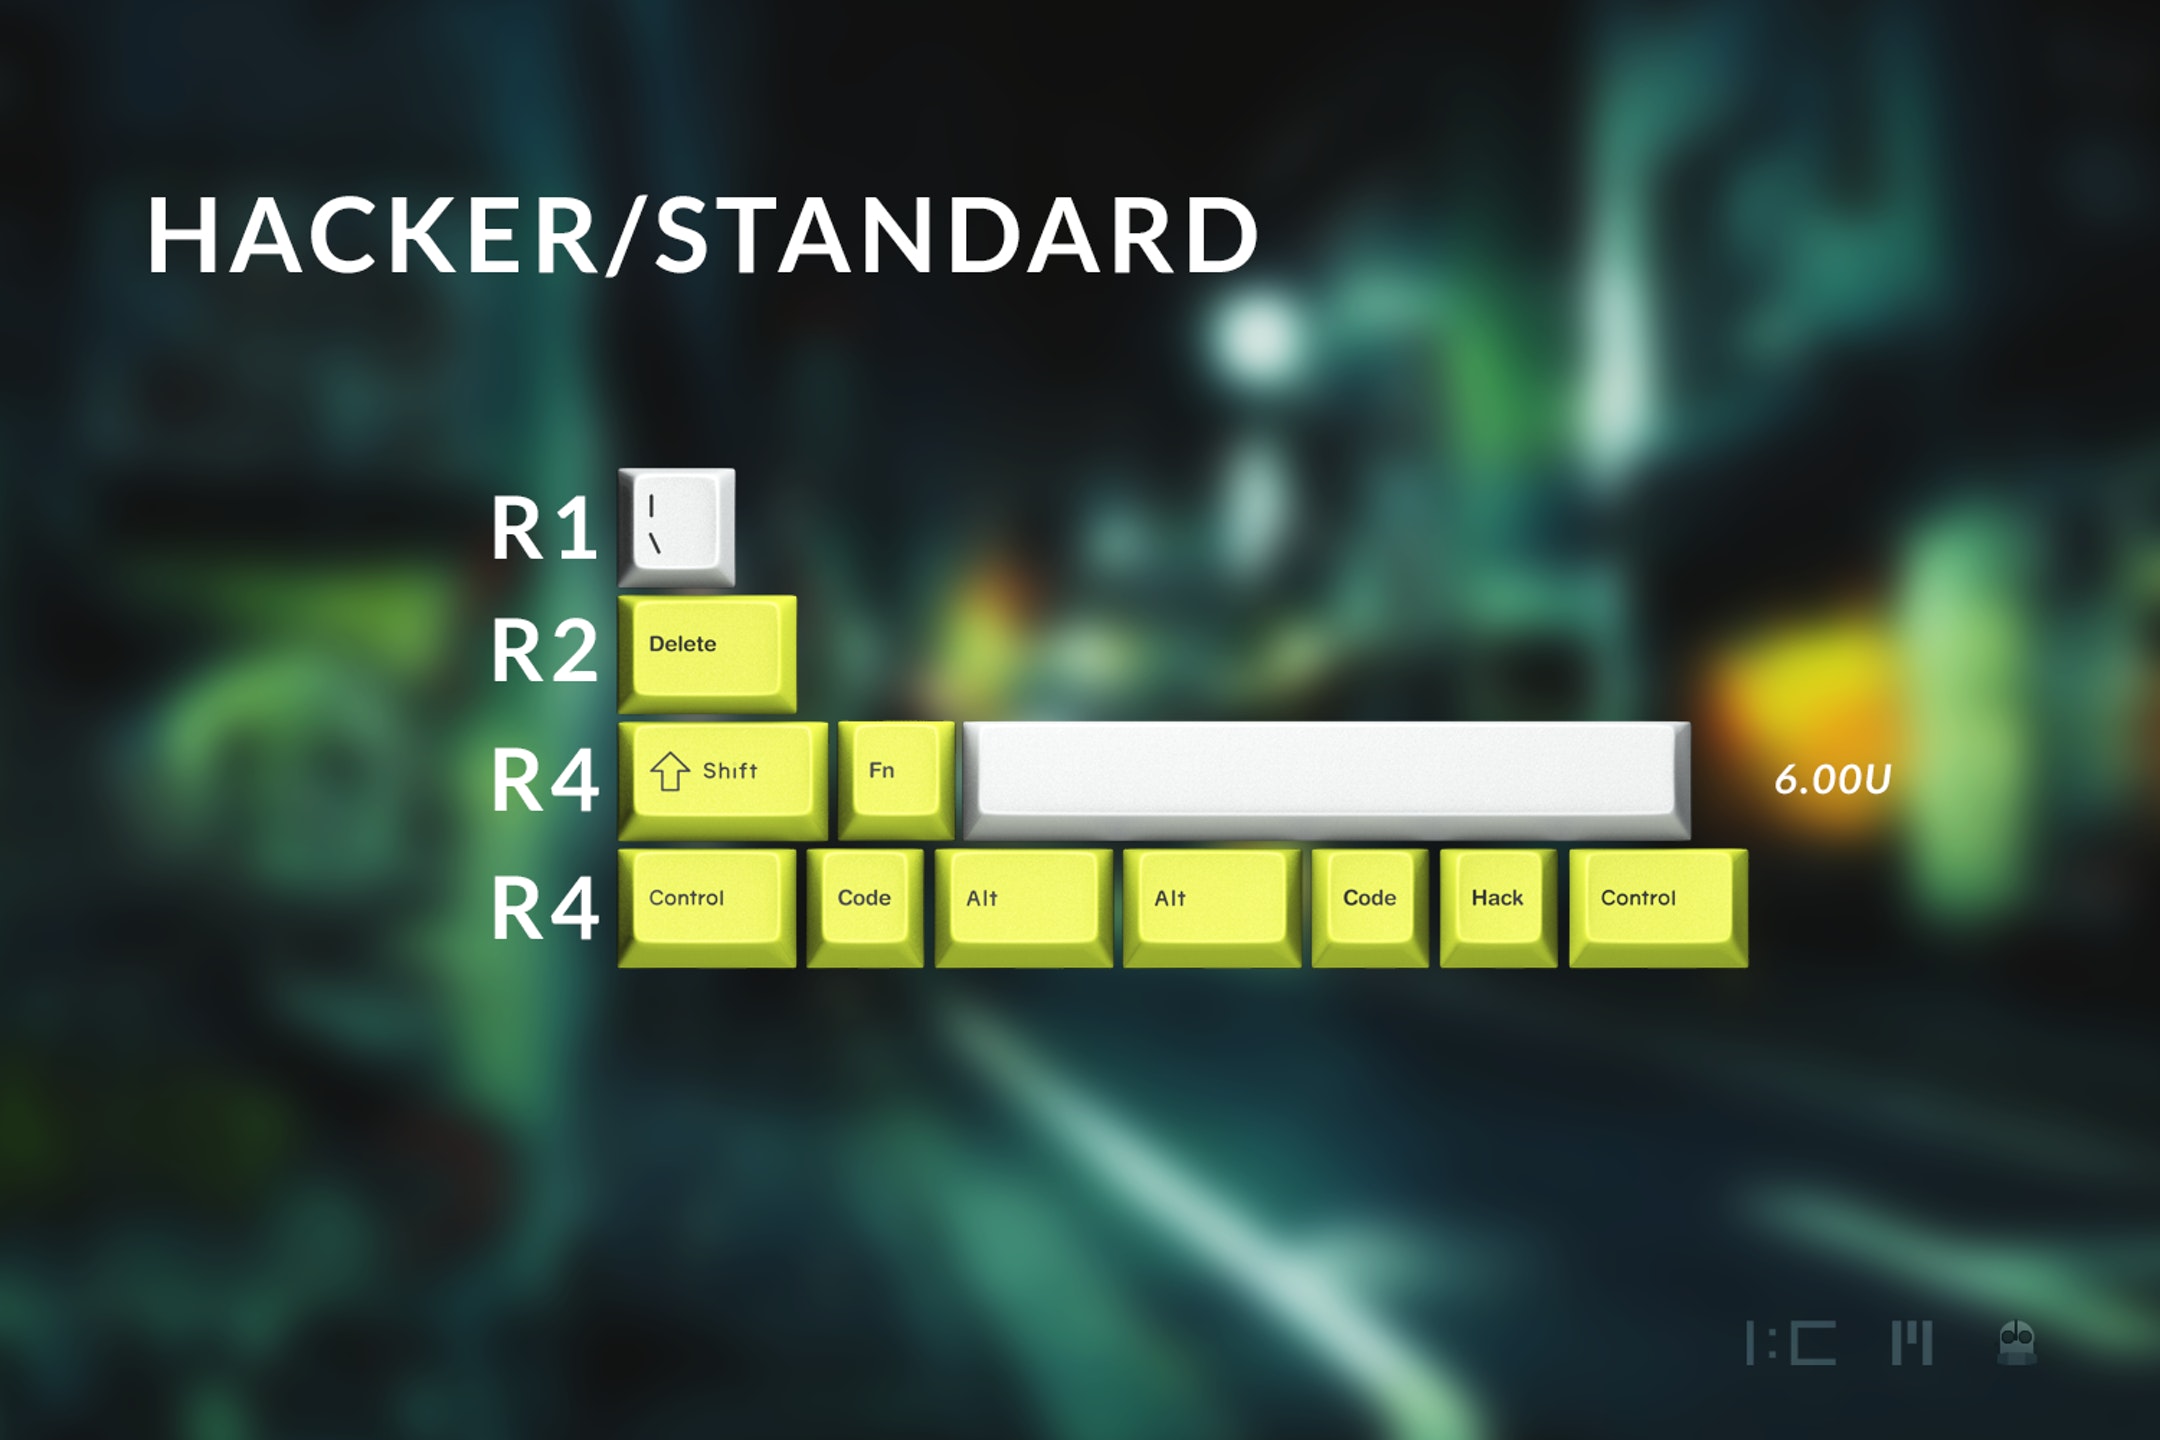 Hacker/Standard